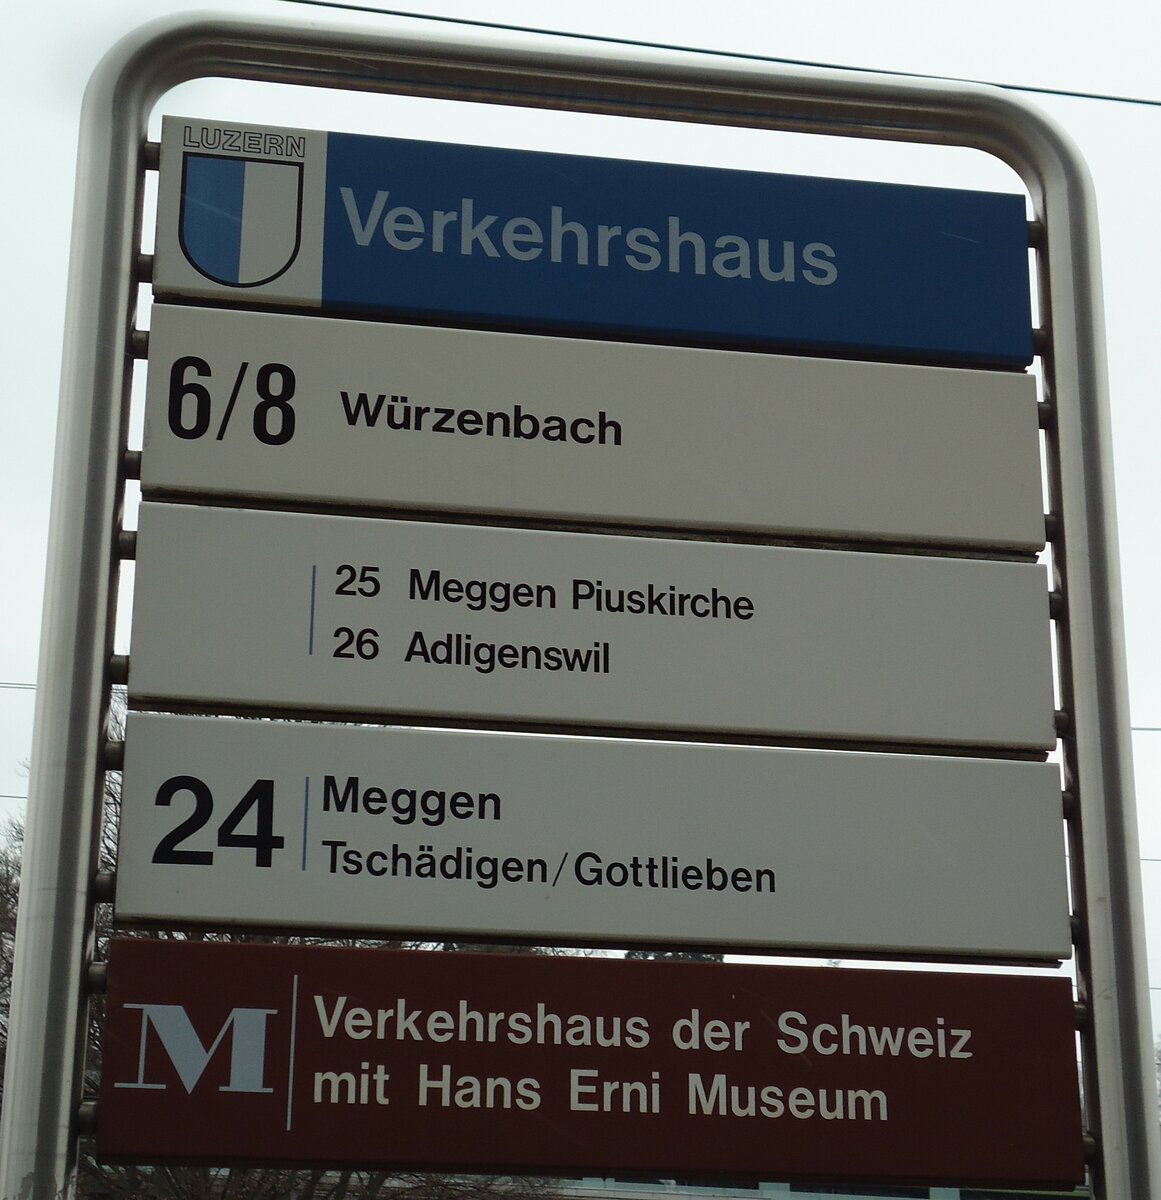 (143'328) - VBL-Haltestellenschild - Luzern, Verkehrshaus - am 20. Februar 2013